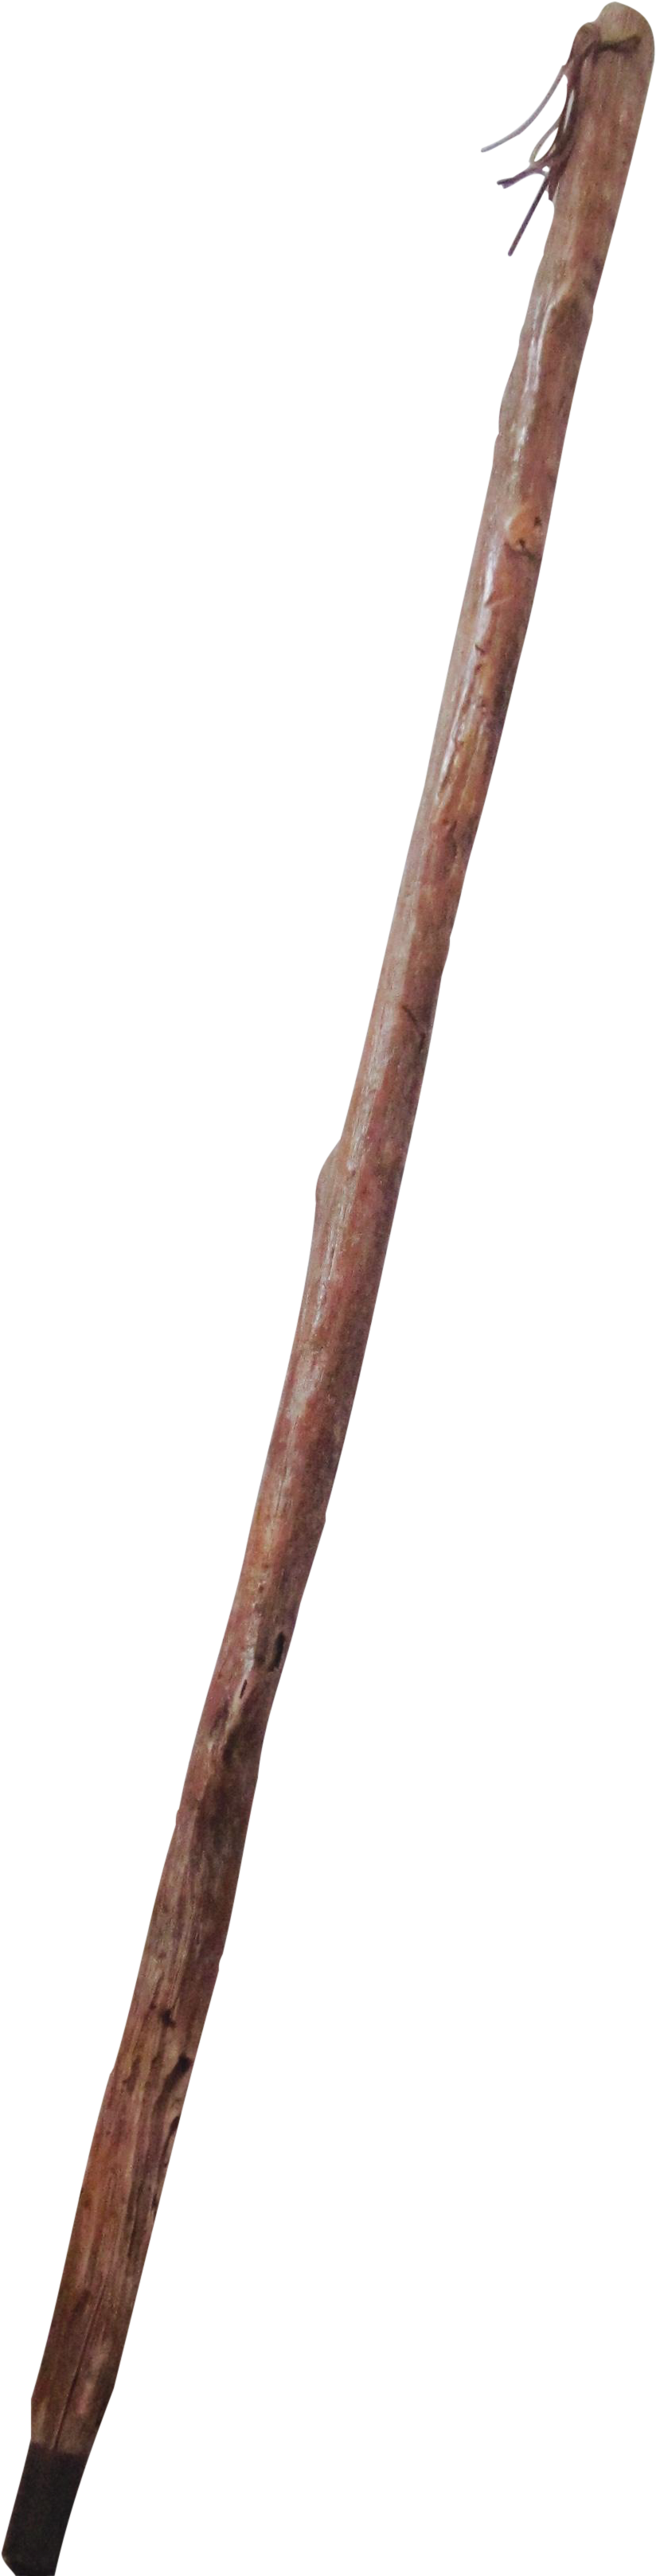 Rustic Walking Stick PNG image